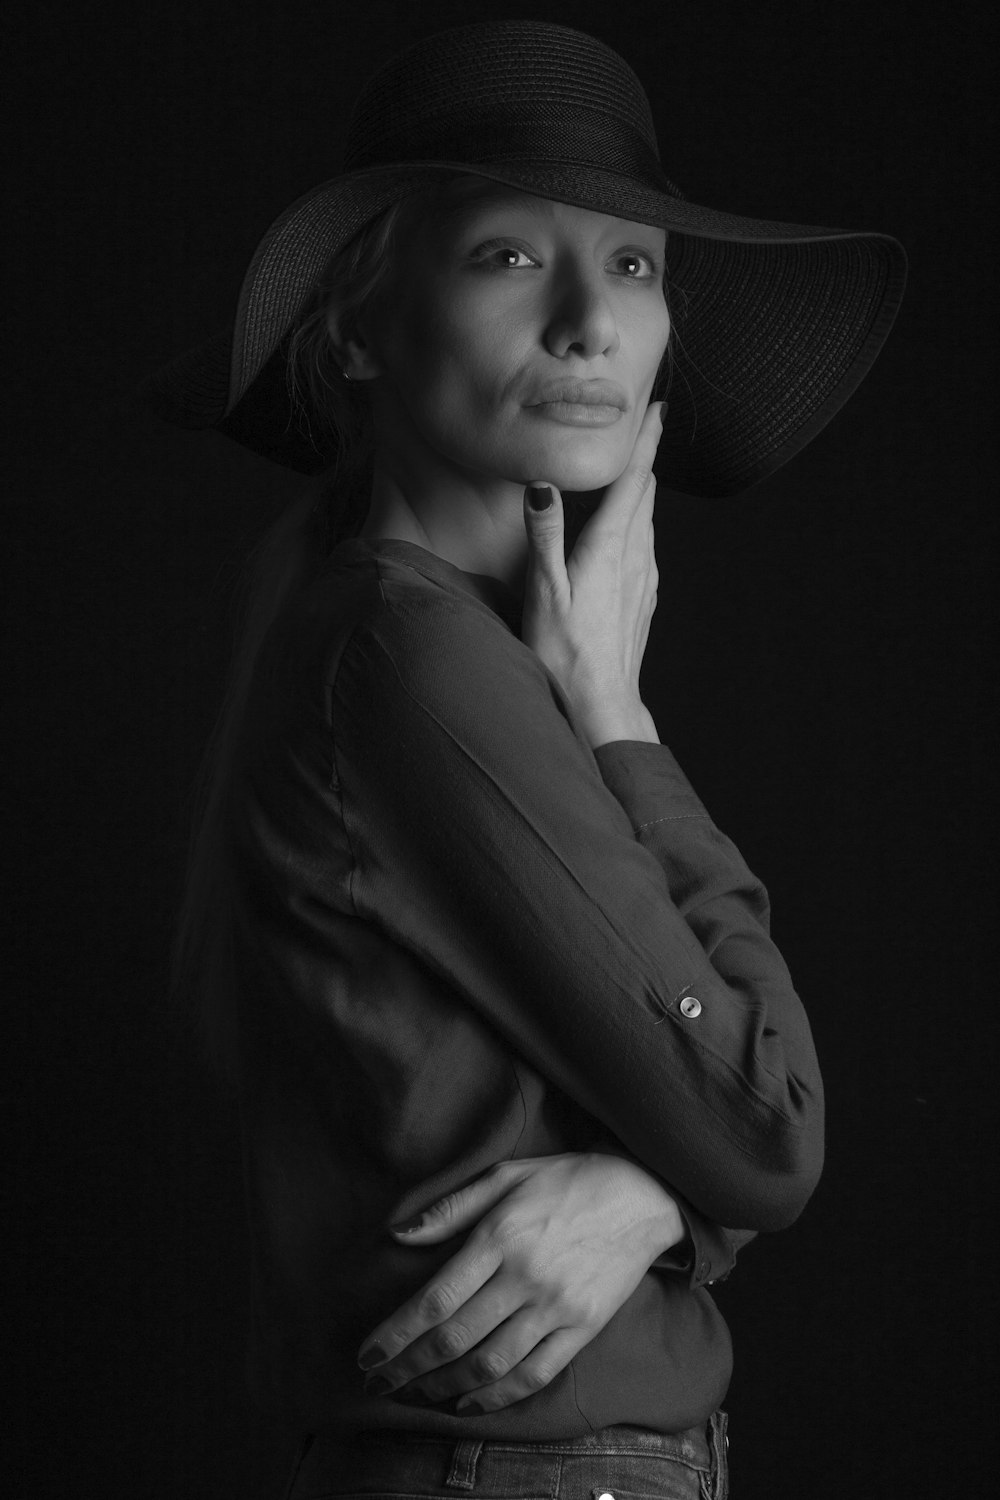 woman wearing hat